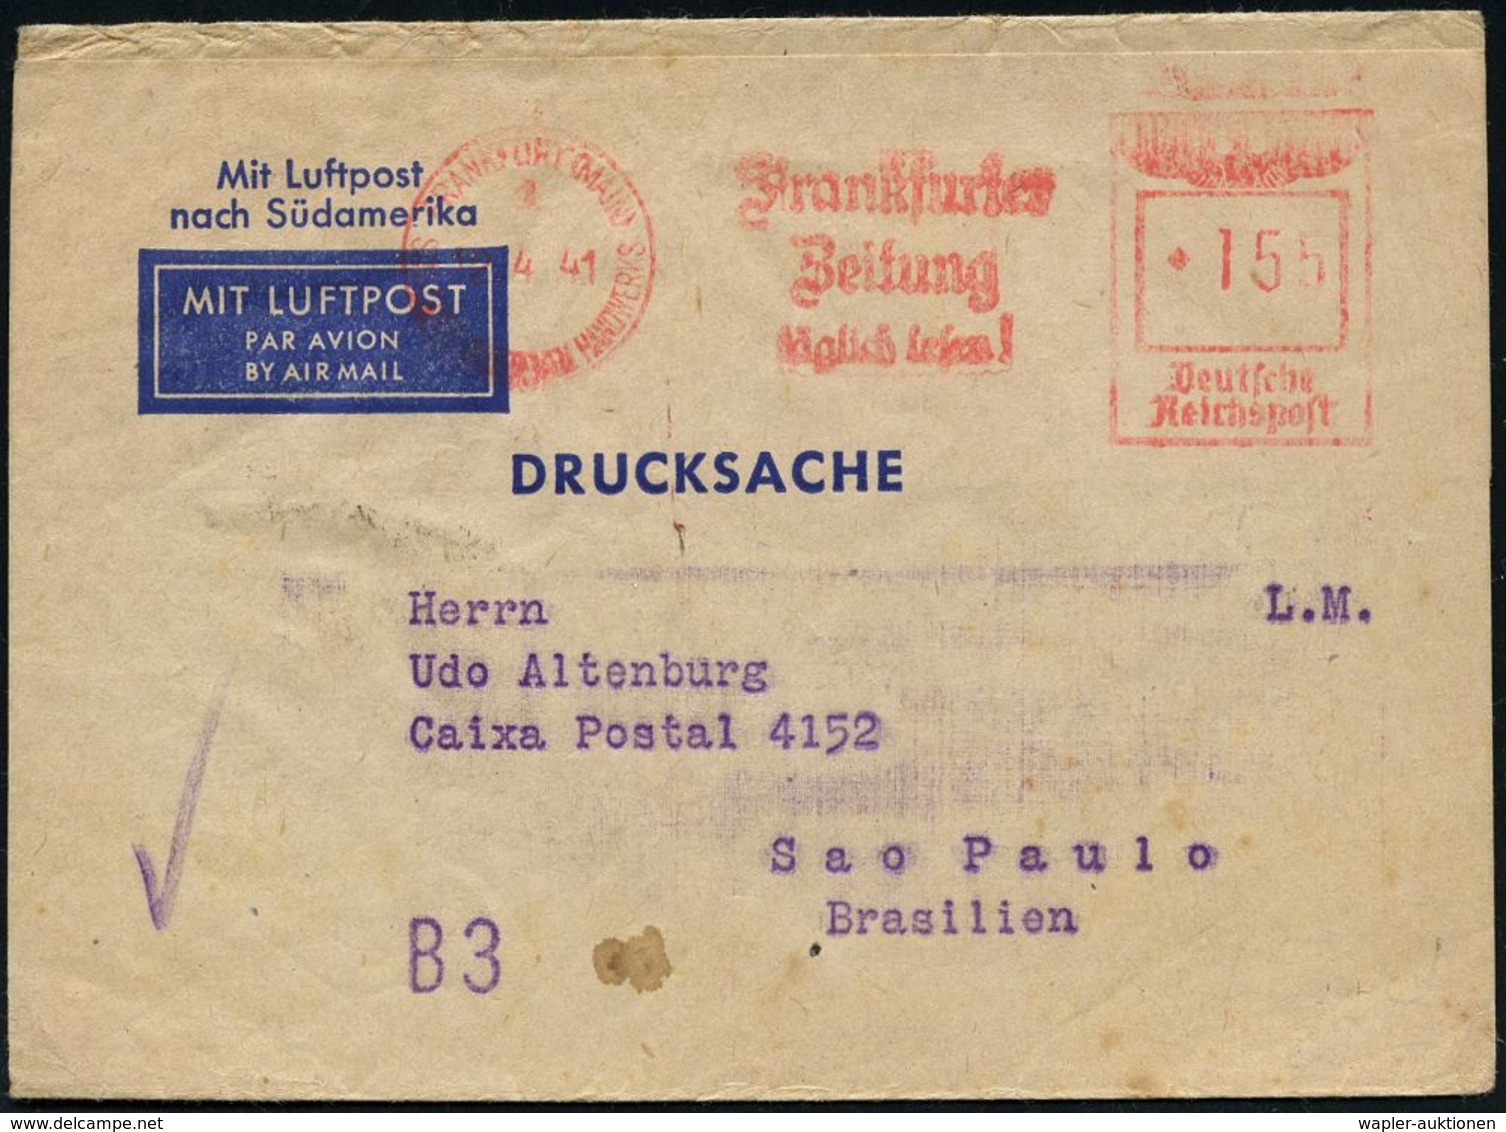 FLUG- & KATAPULTPOST SÜDAMERIKA : FRANKFURT (MAIN)1/ SDH/ Frankfurter/ Zeitung/ Täglich Lesen! 1941 (Apr.) AFS 155 Pf. A - Sonstige (Luft)